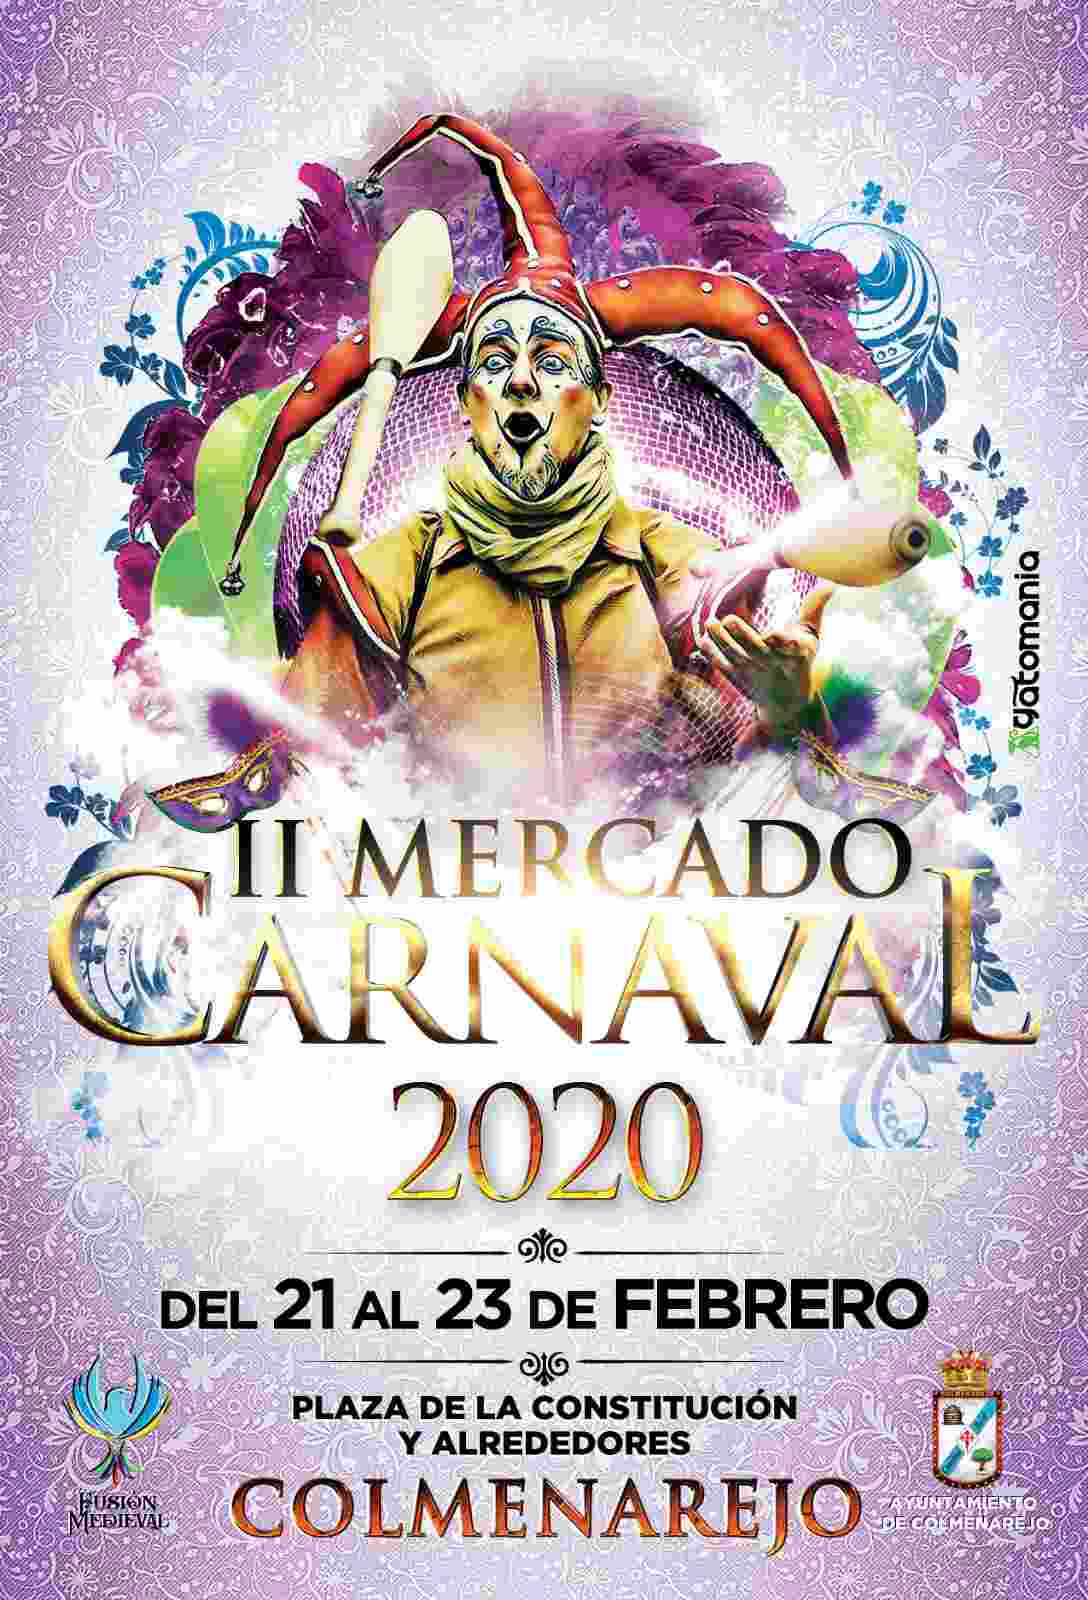 [Programacion]  21 al 23 de Febrero 2020 : Mercado de carnaval en Colmenarejo, Madrid